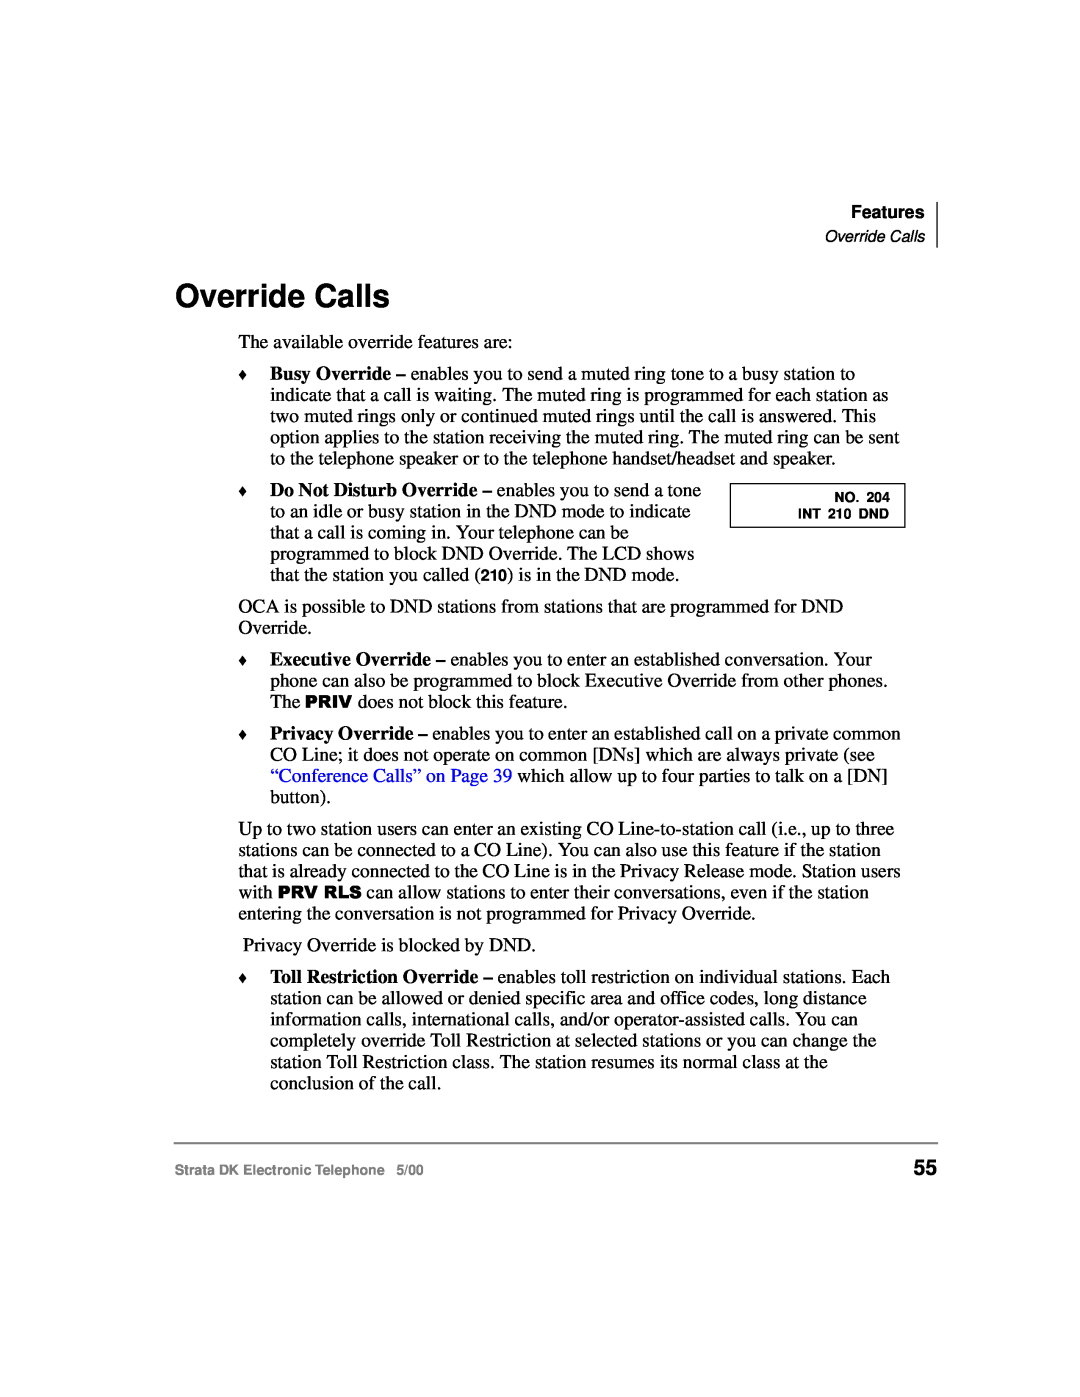 Toshiba Strata DK manual Override Calls 